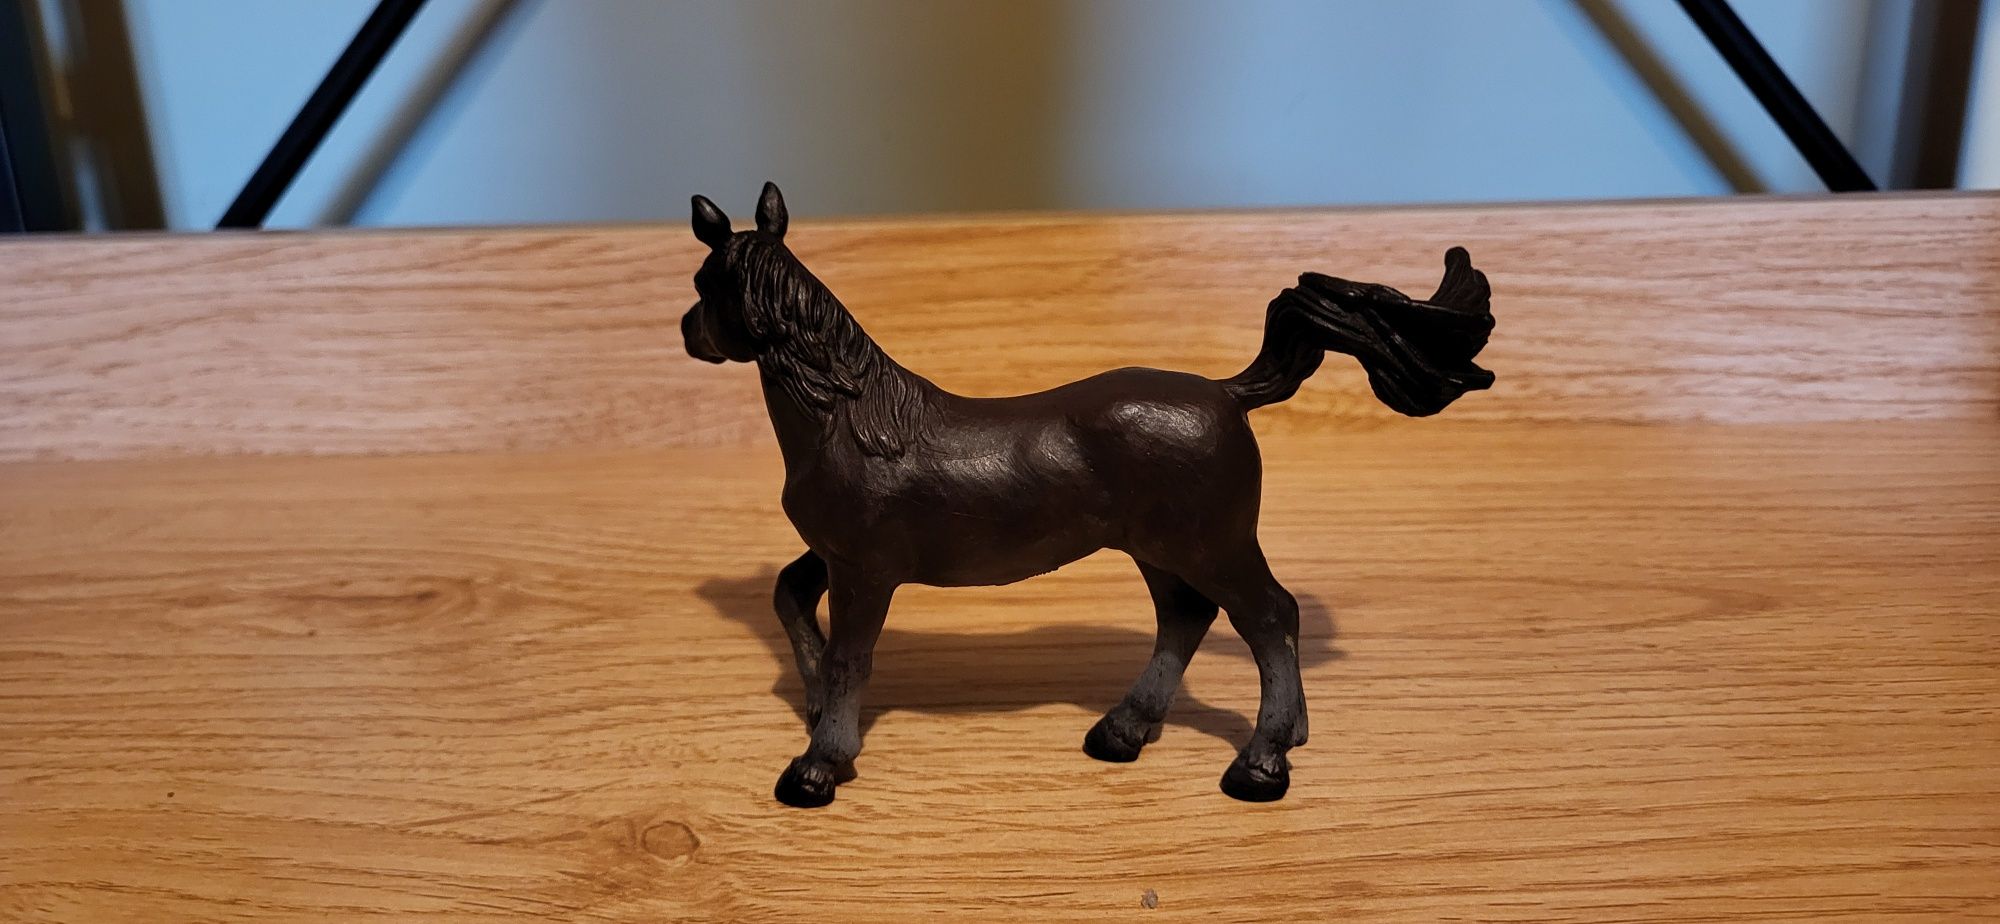 Schleich koń arabski klacz figurka unikat model wycofany z 1992 r.